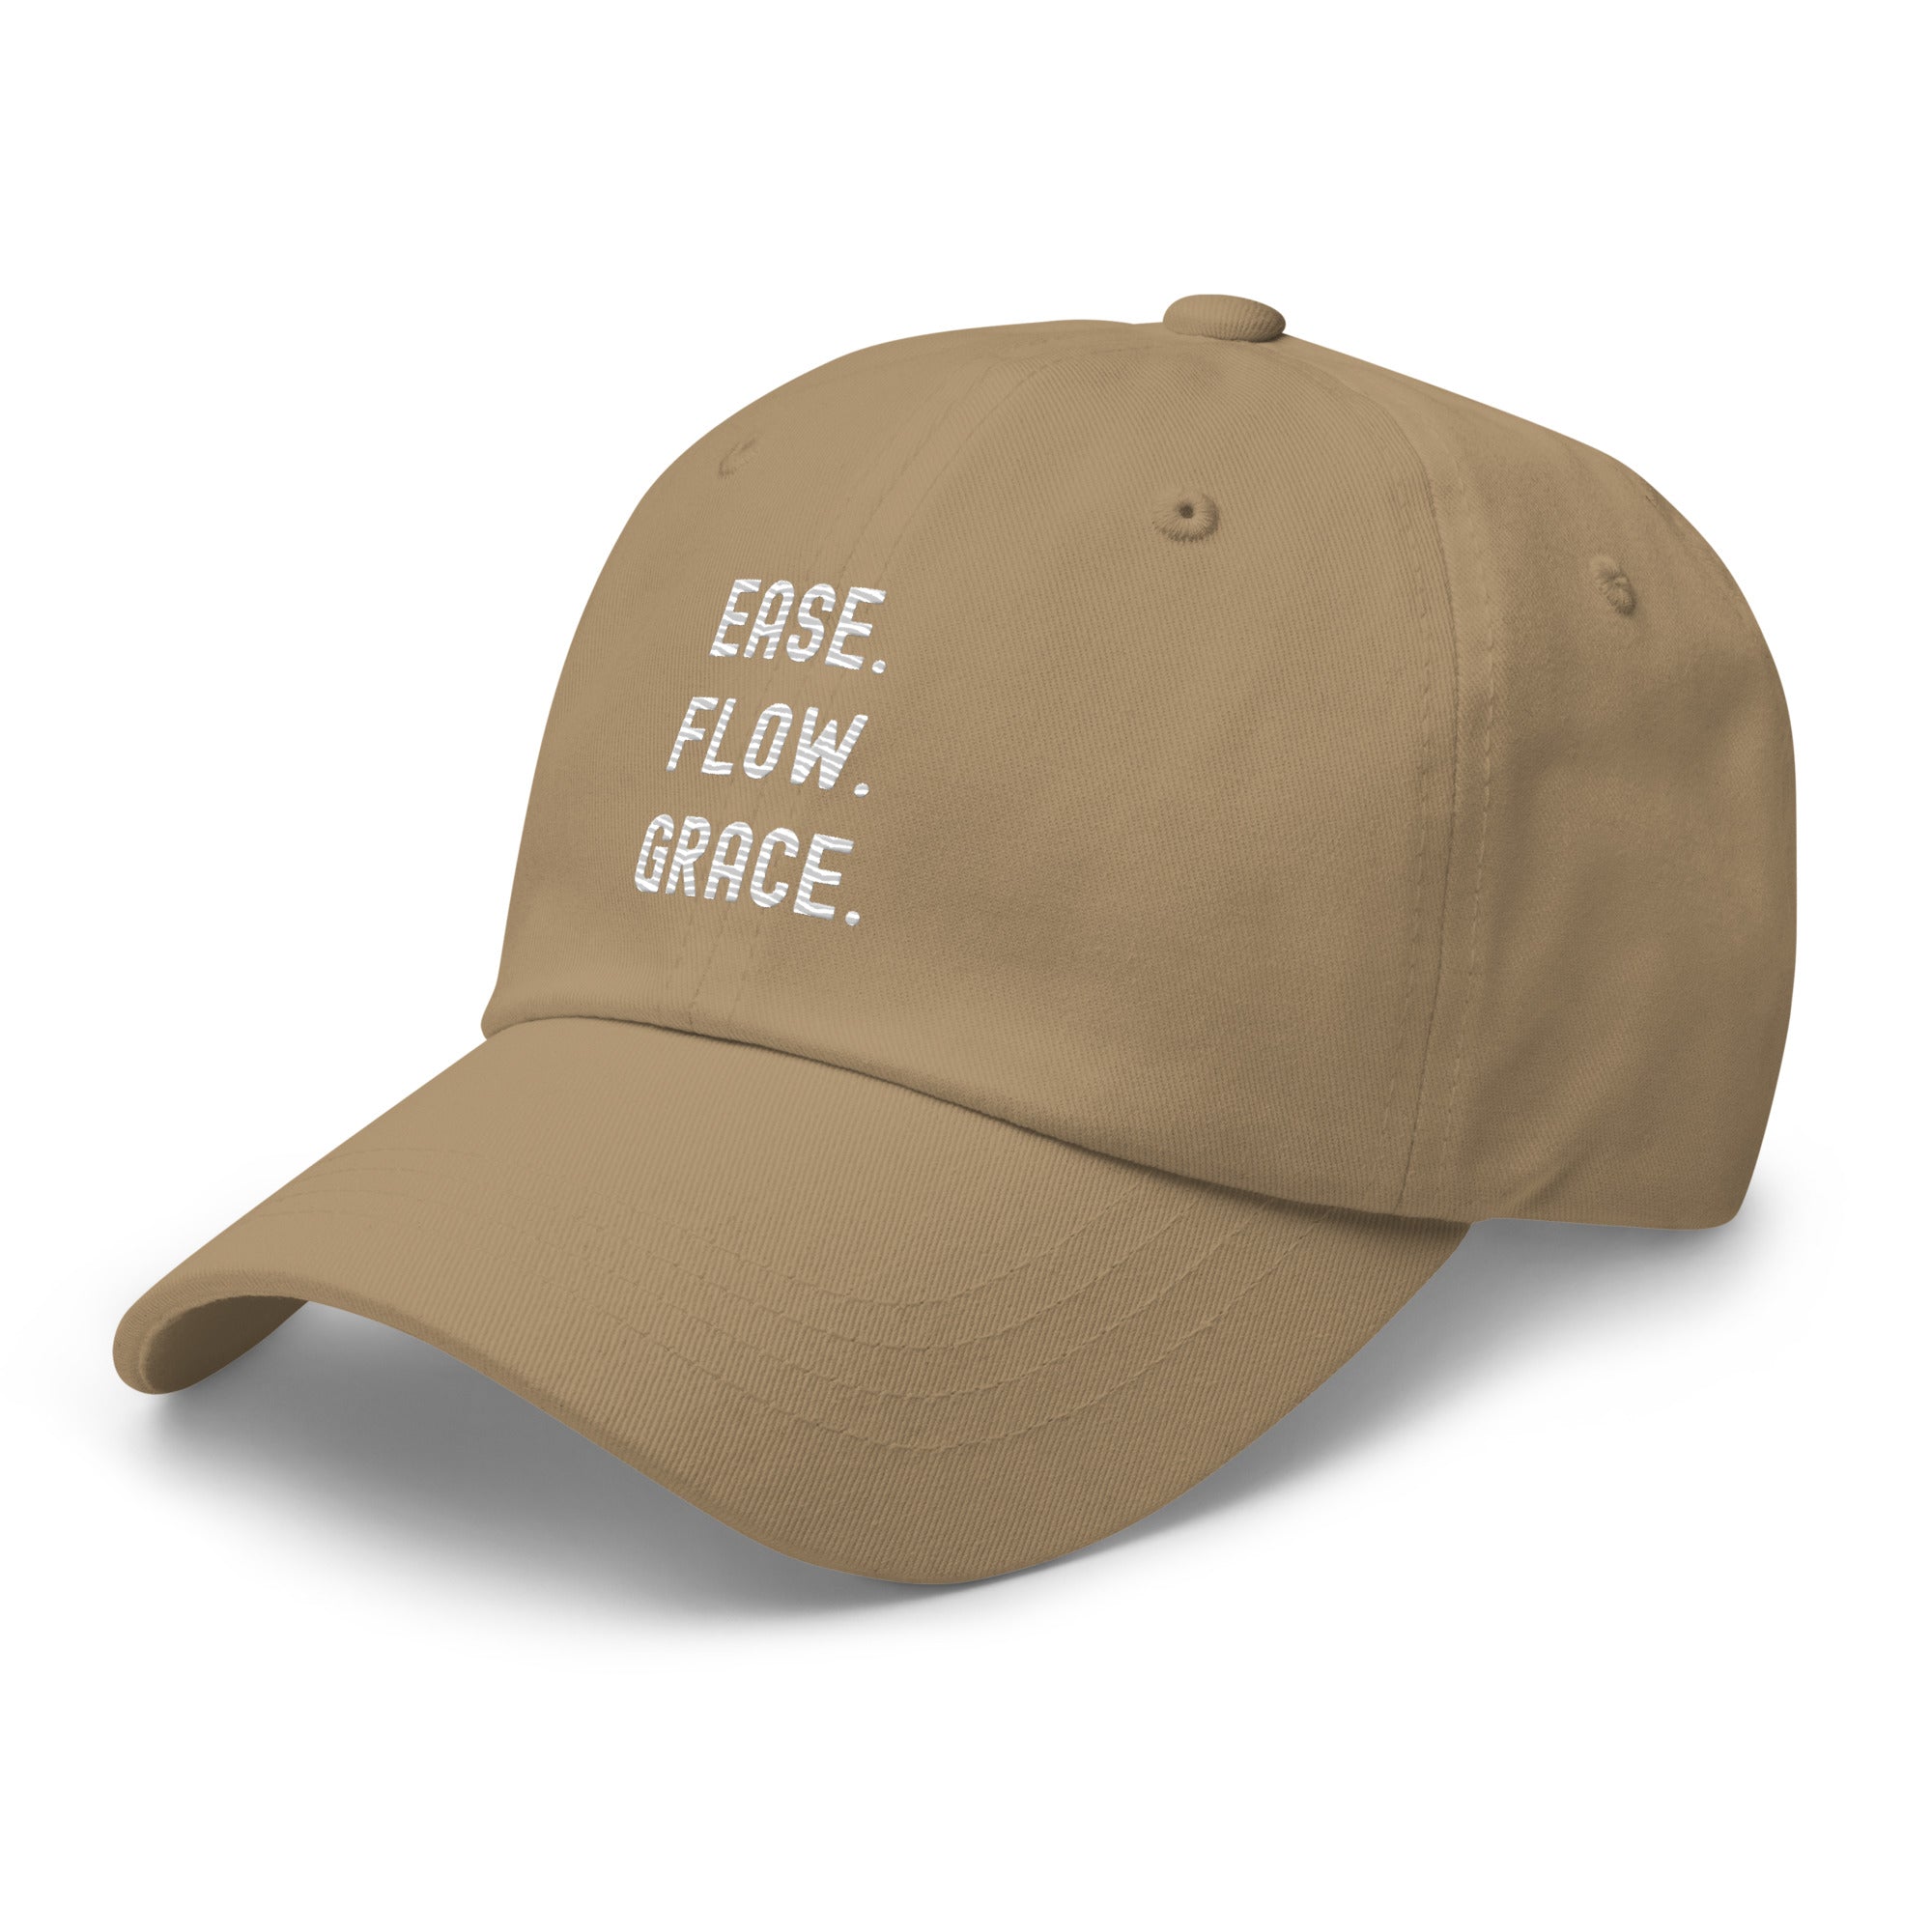 Hat | Ease. Flow. Grace.